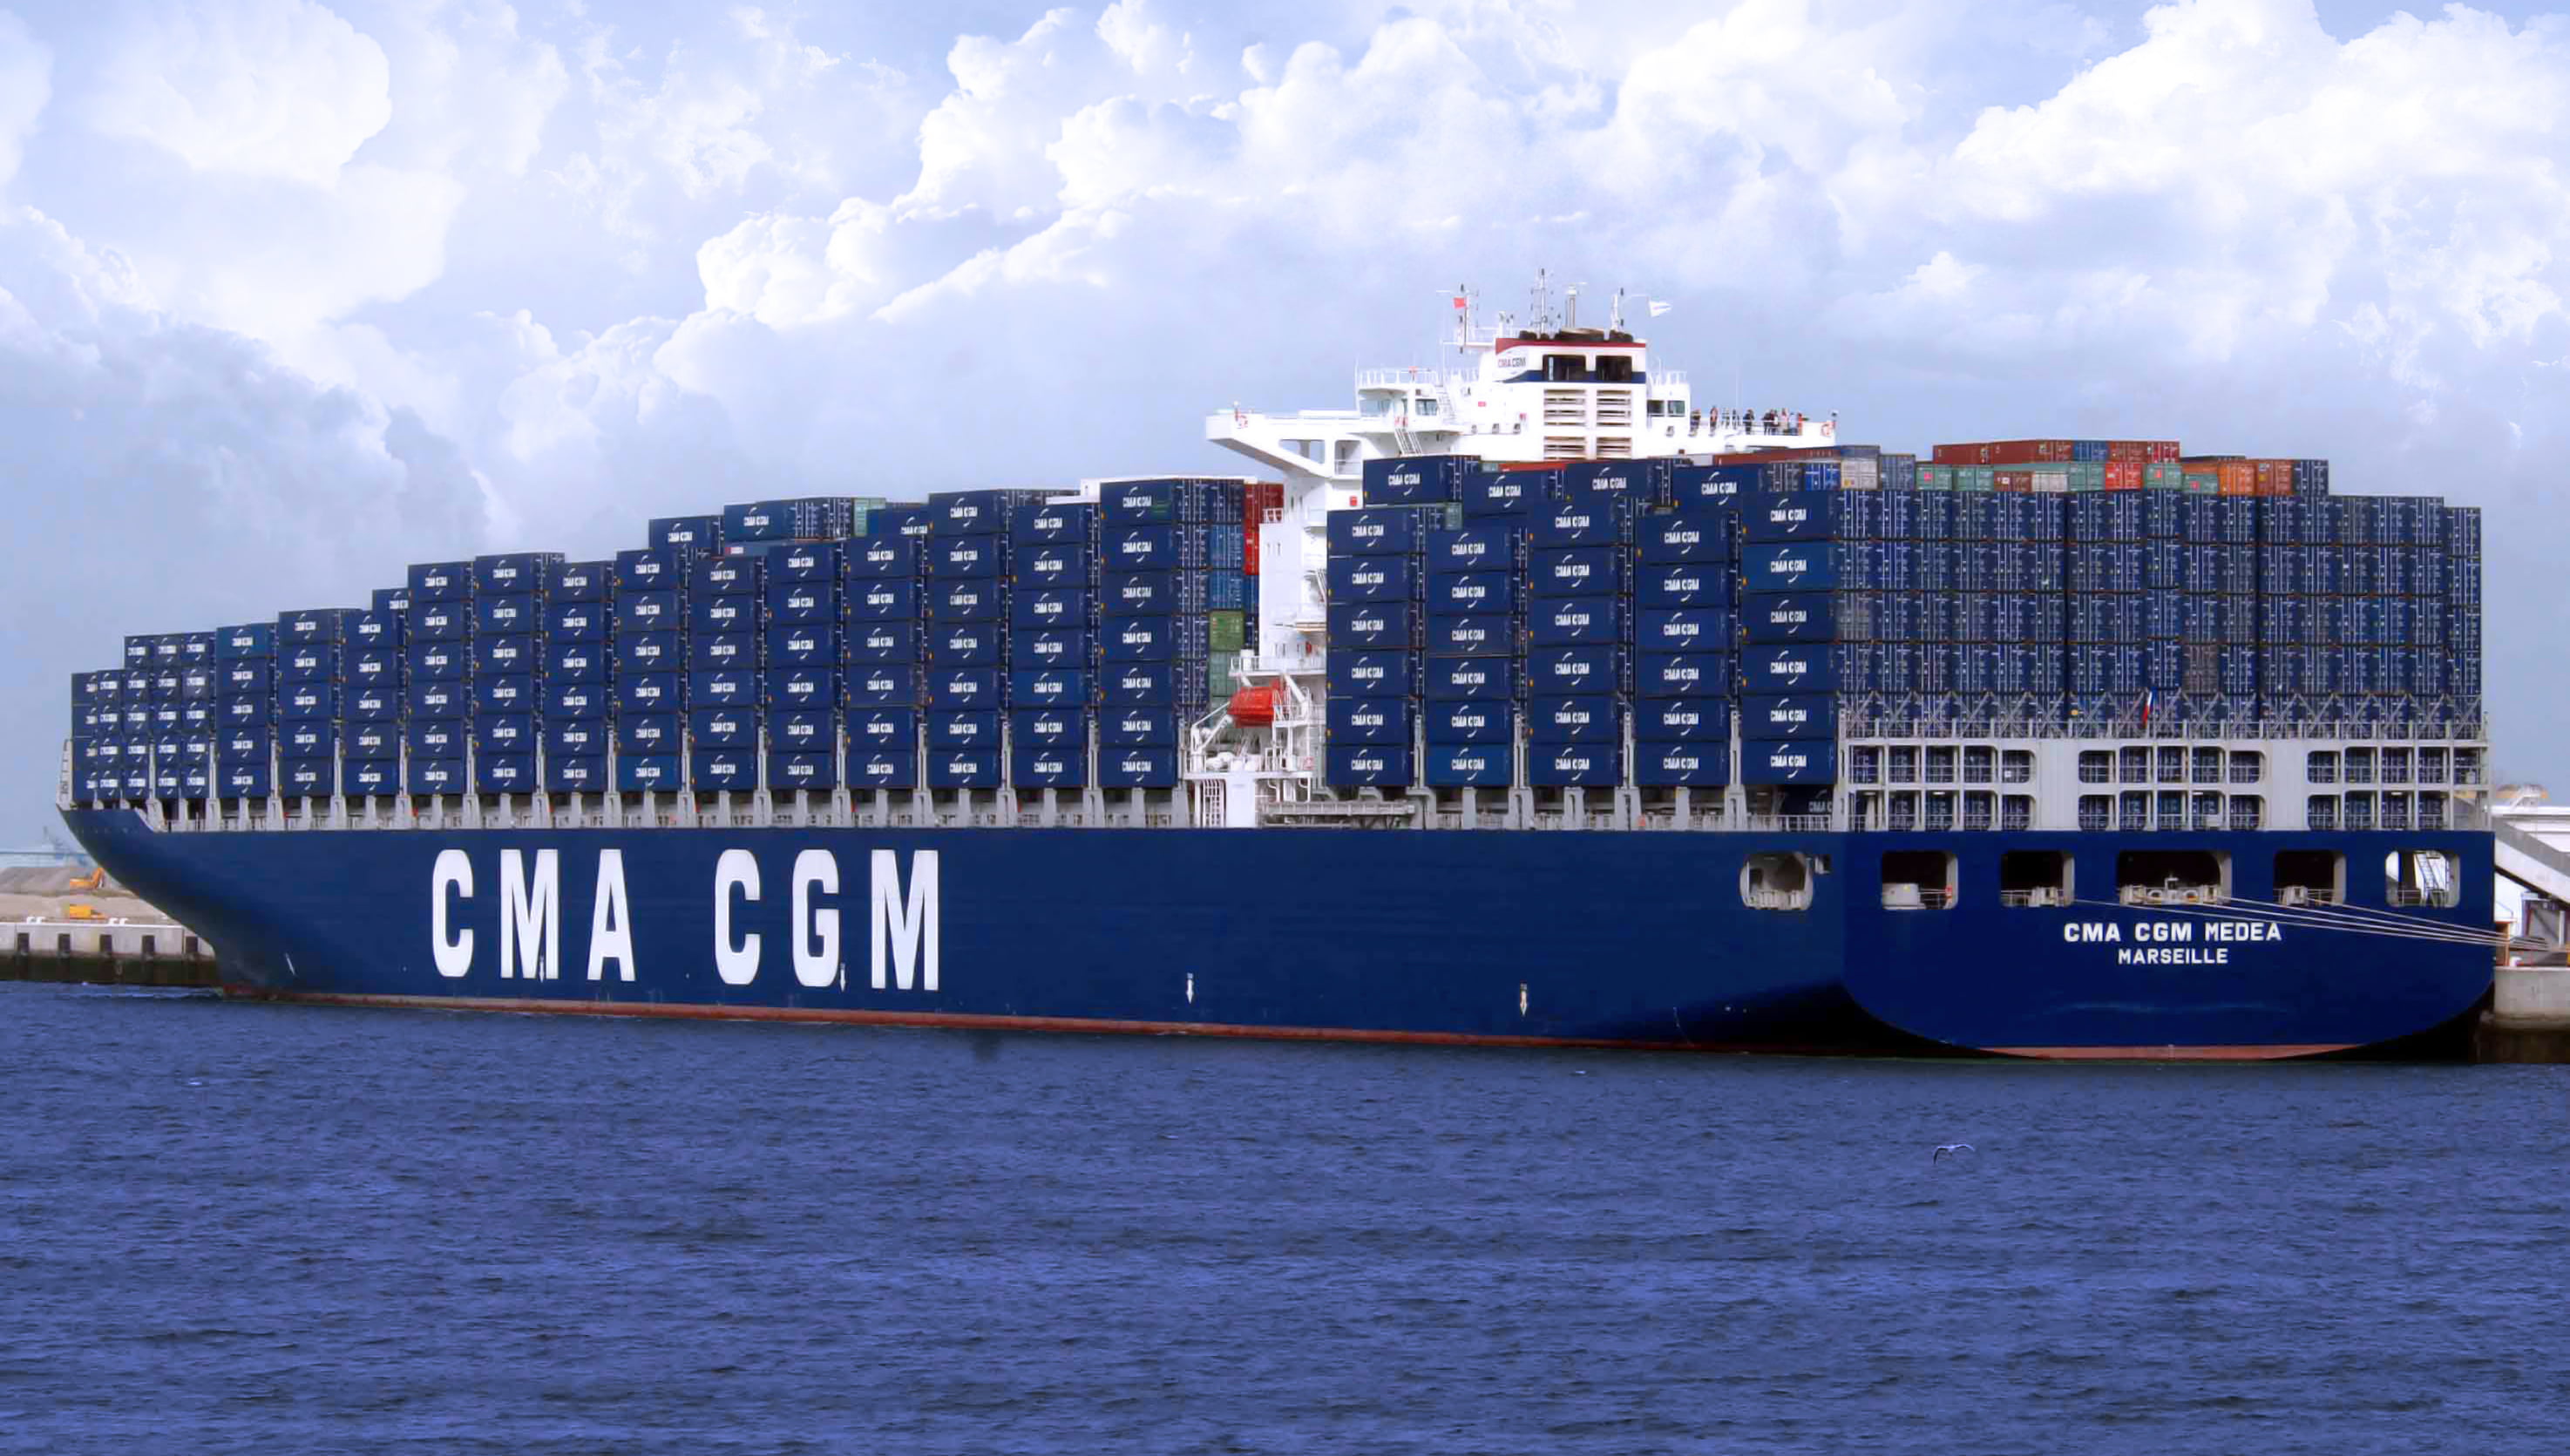 blue CMA CGM container ship, Clouds, Sea, Pier, Board, The ship